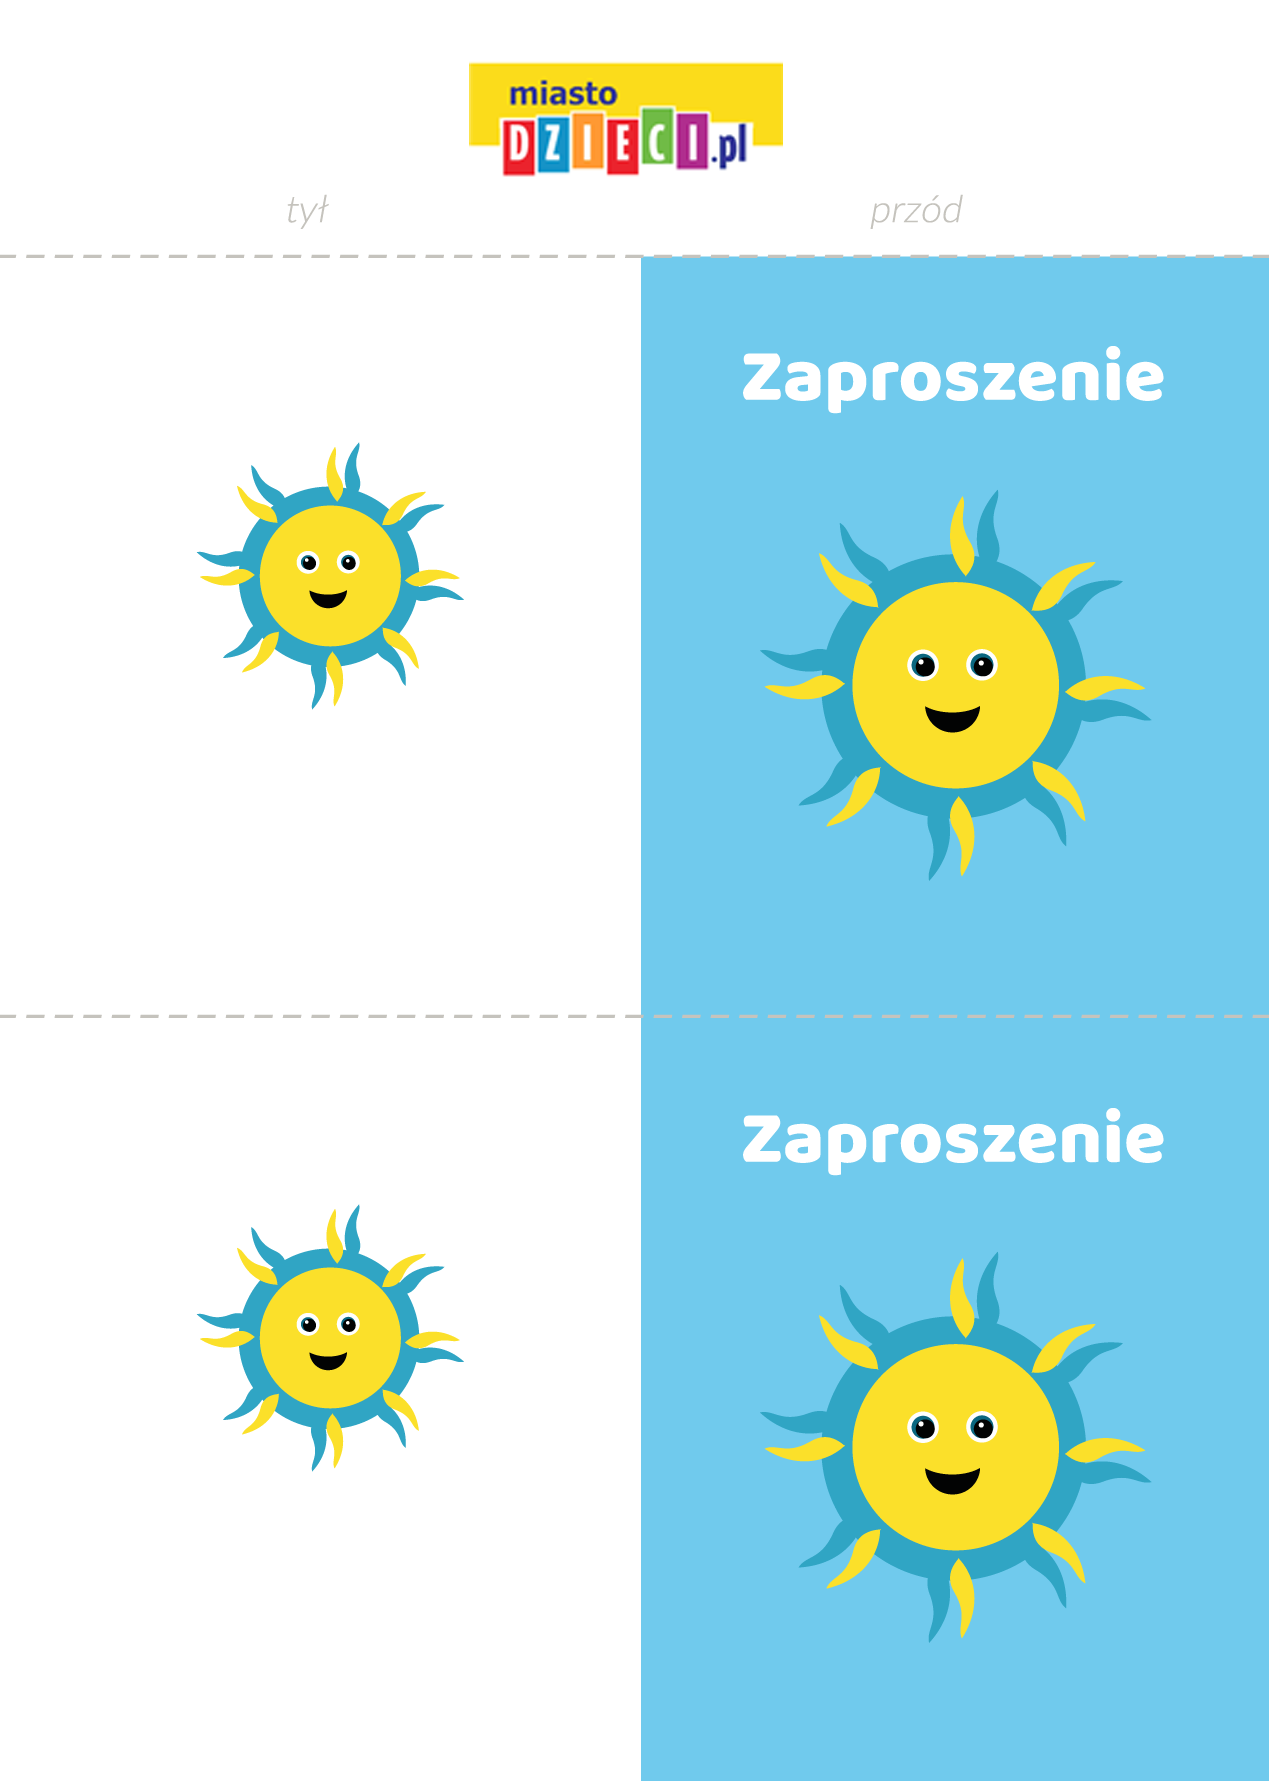 zaproszenia na urodziny dziecka - słoneczka szablony do druku dla dzieci MiastoDzieci.pl